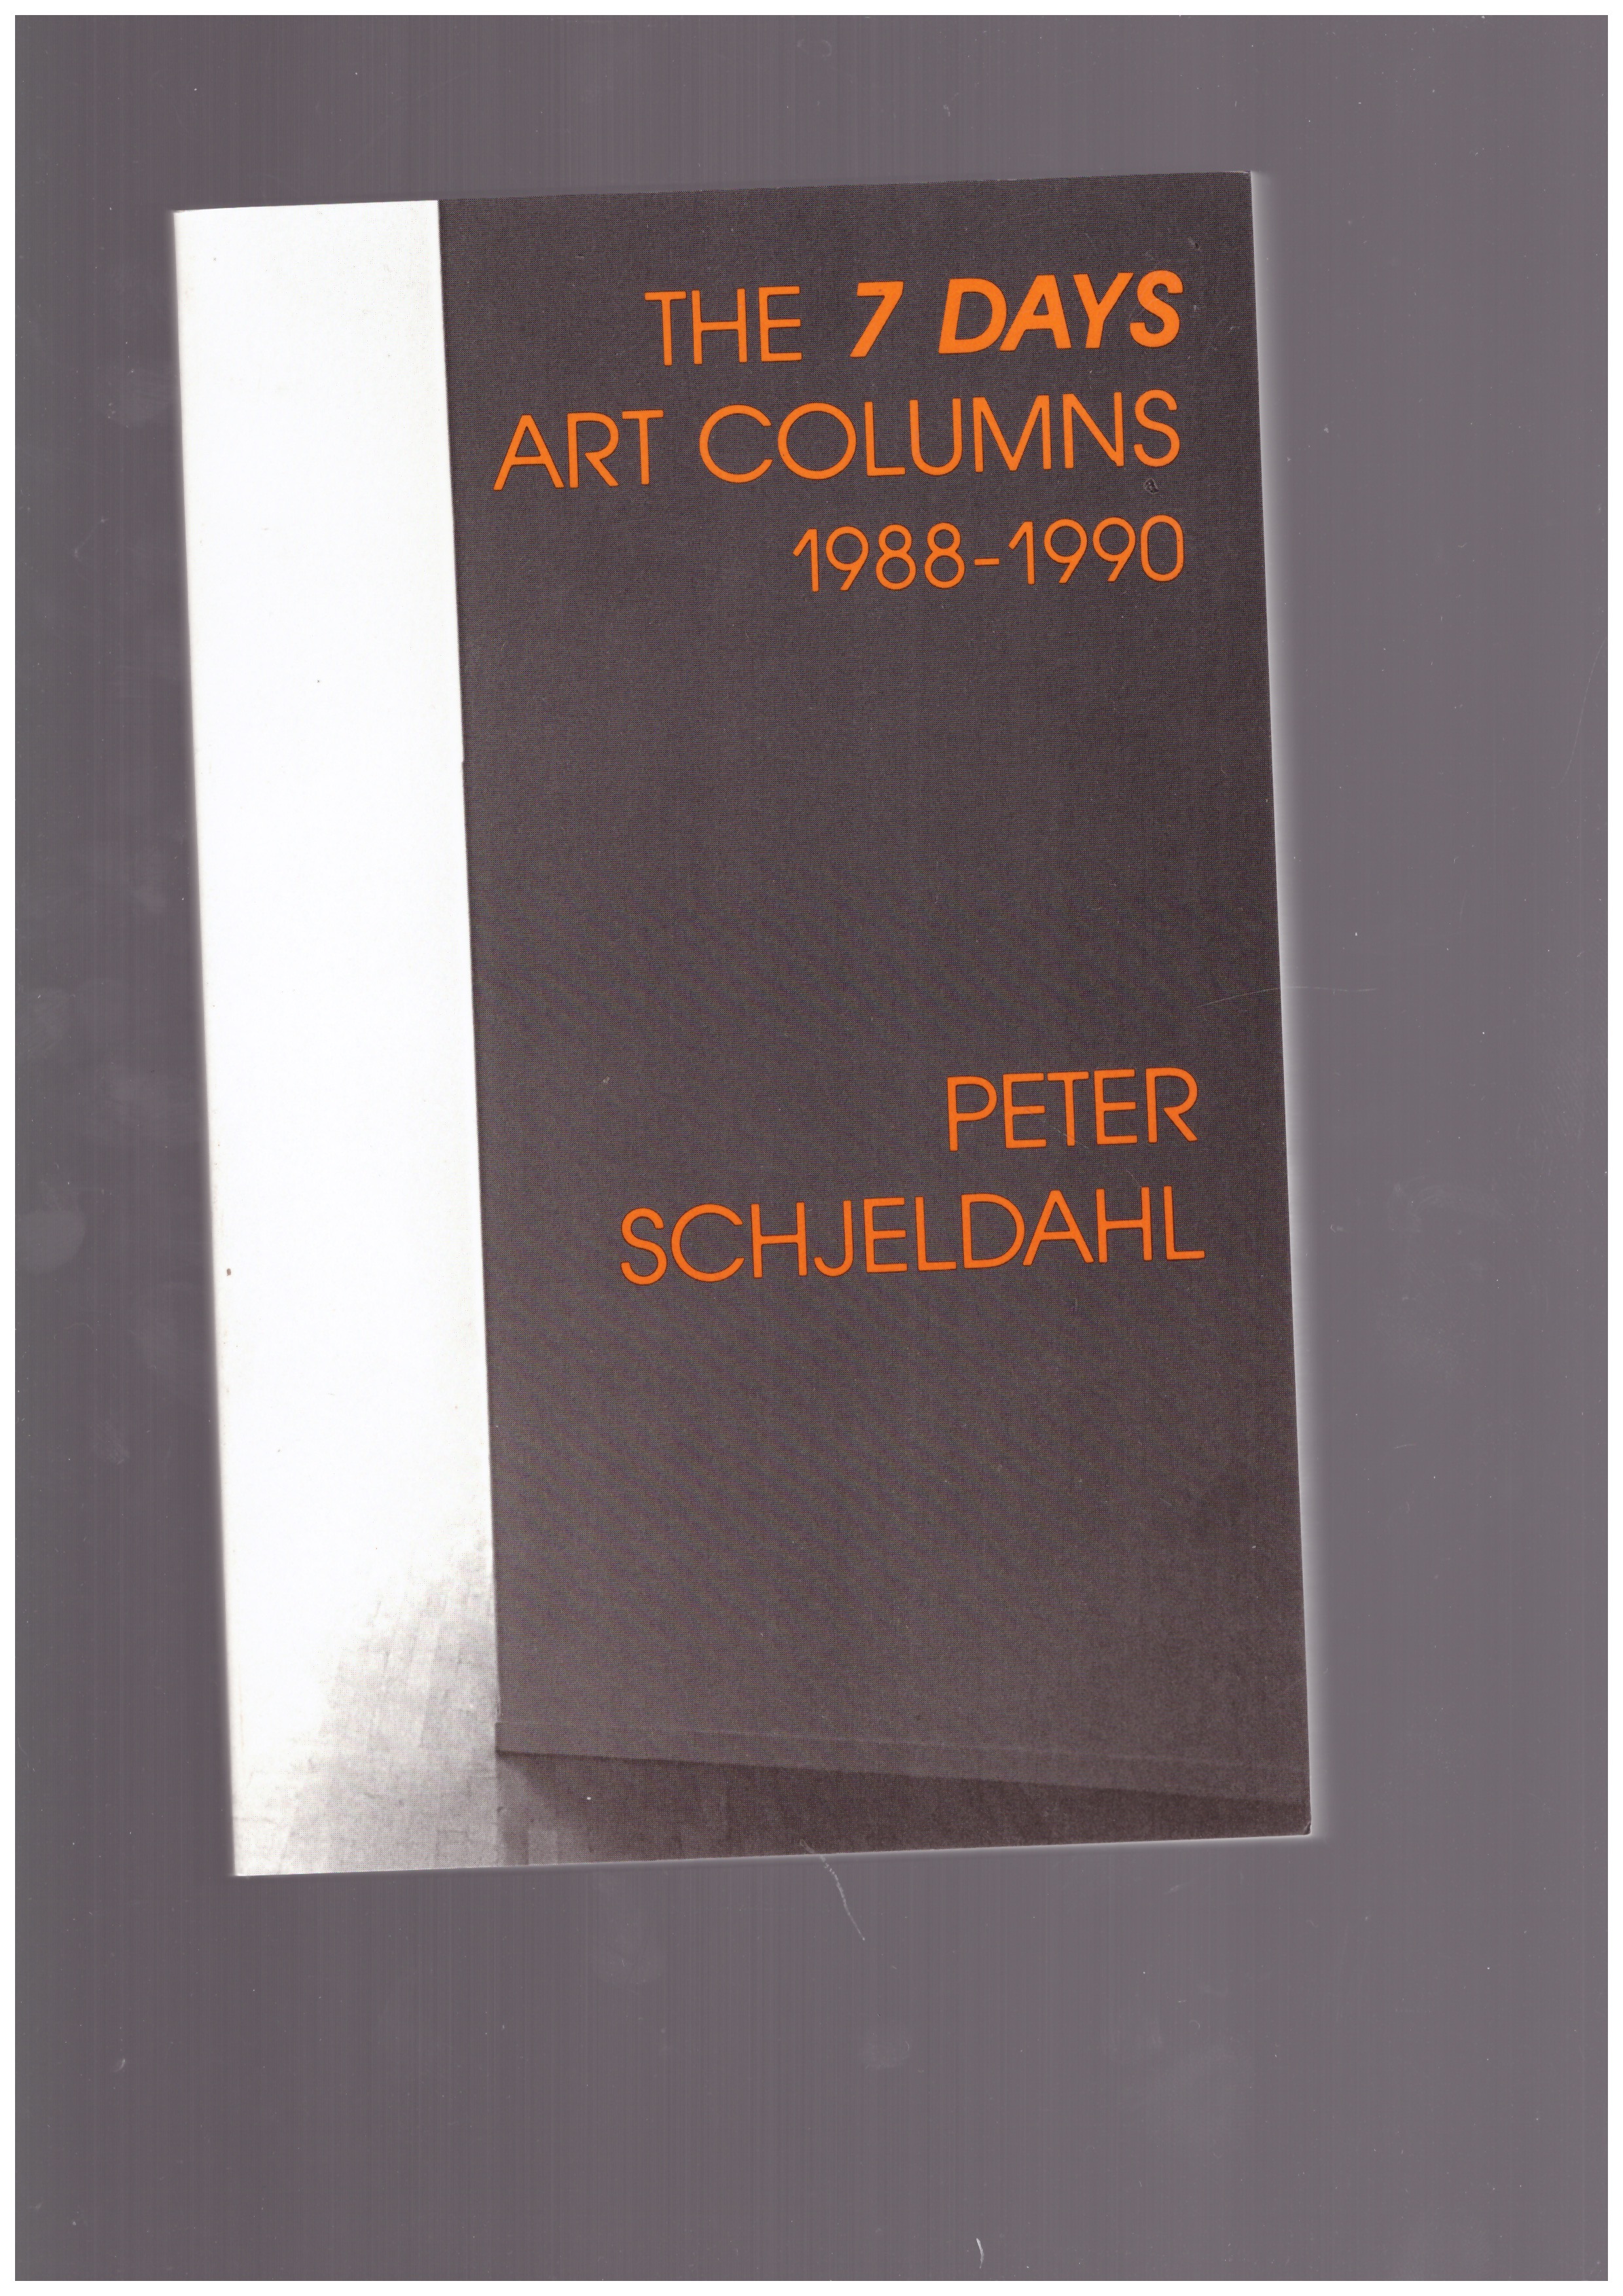 SCHJELDAHL, Peter - The 7 days art columns 1988-1990